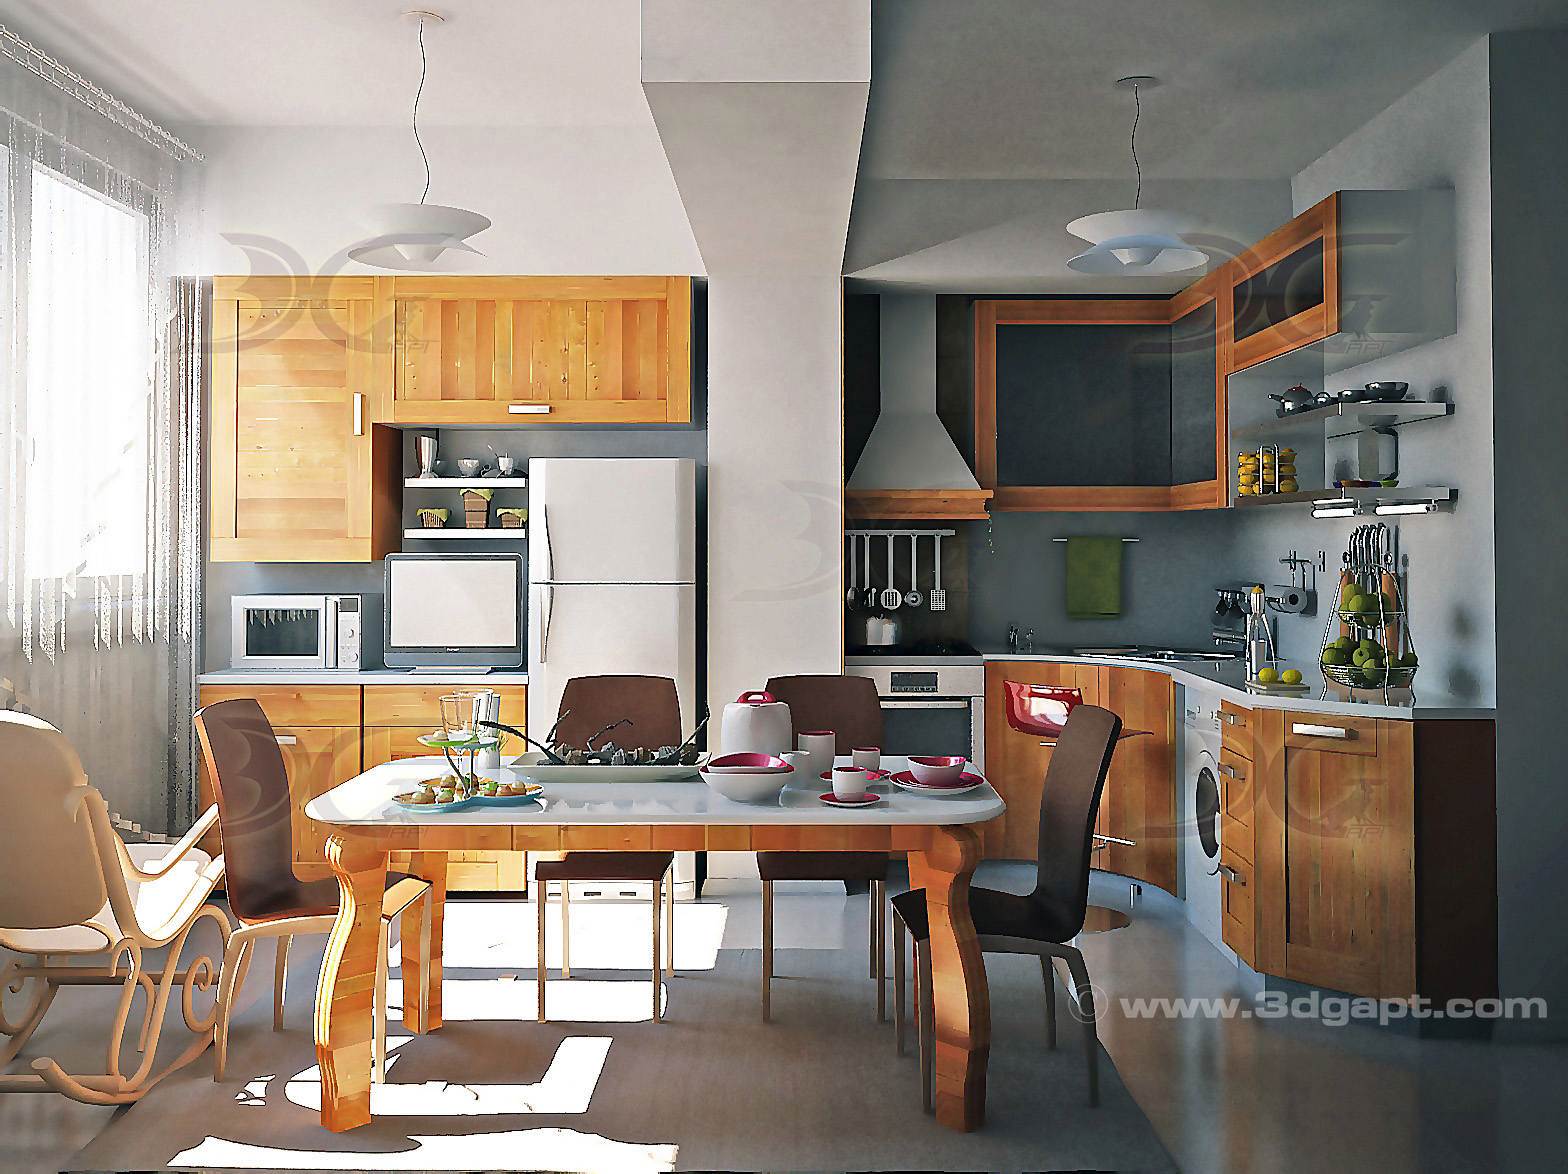 Architecture Interior Kitchen 3versions 2